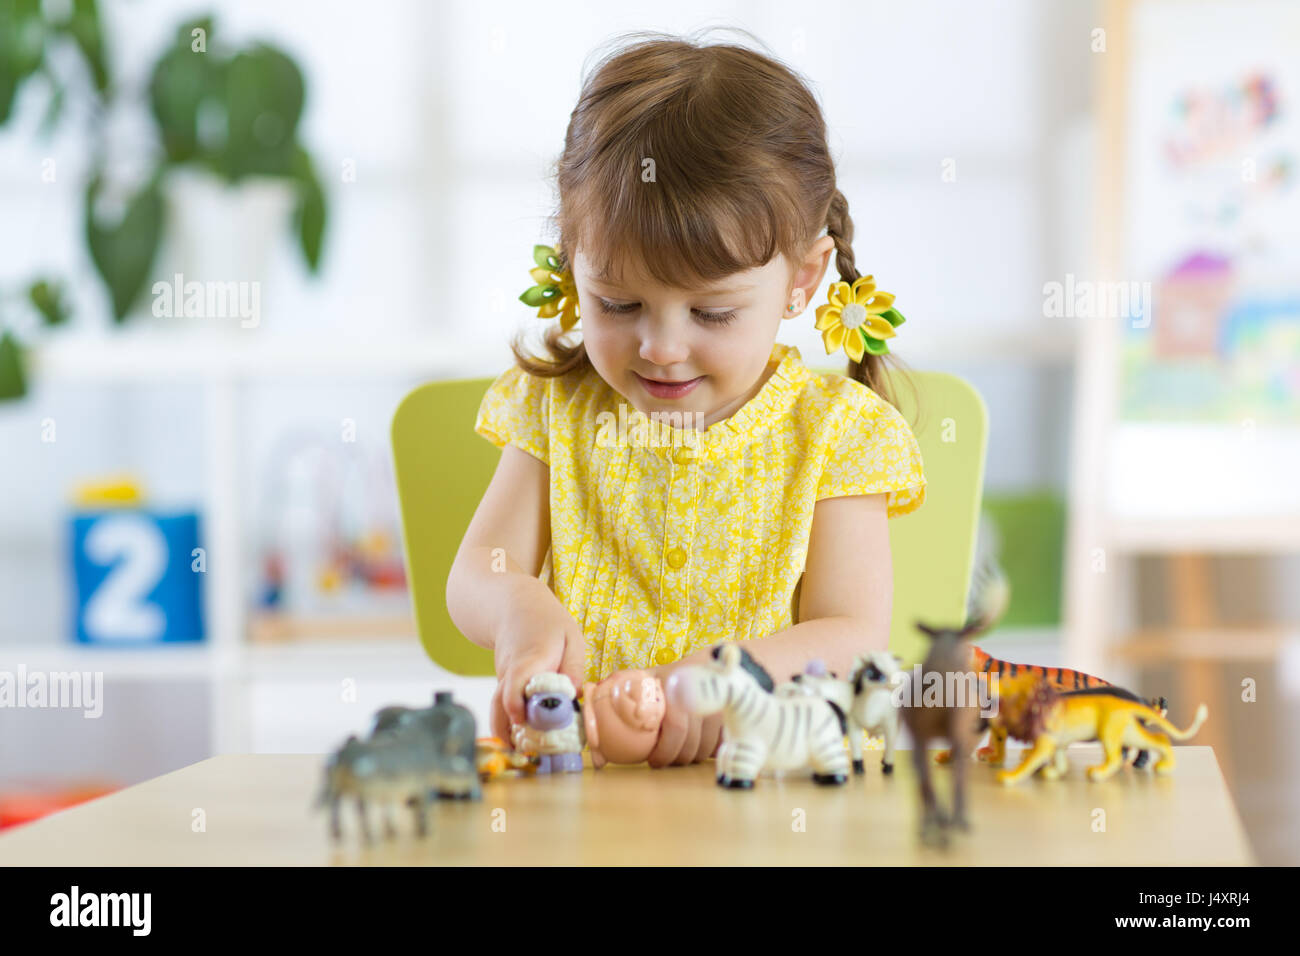 Glückliches kleines Kind spielt tierisches Spielzeug daheim oder Kindertagesstätten Stockfoto